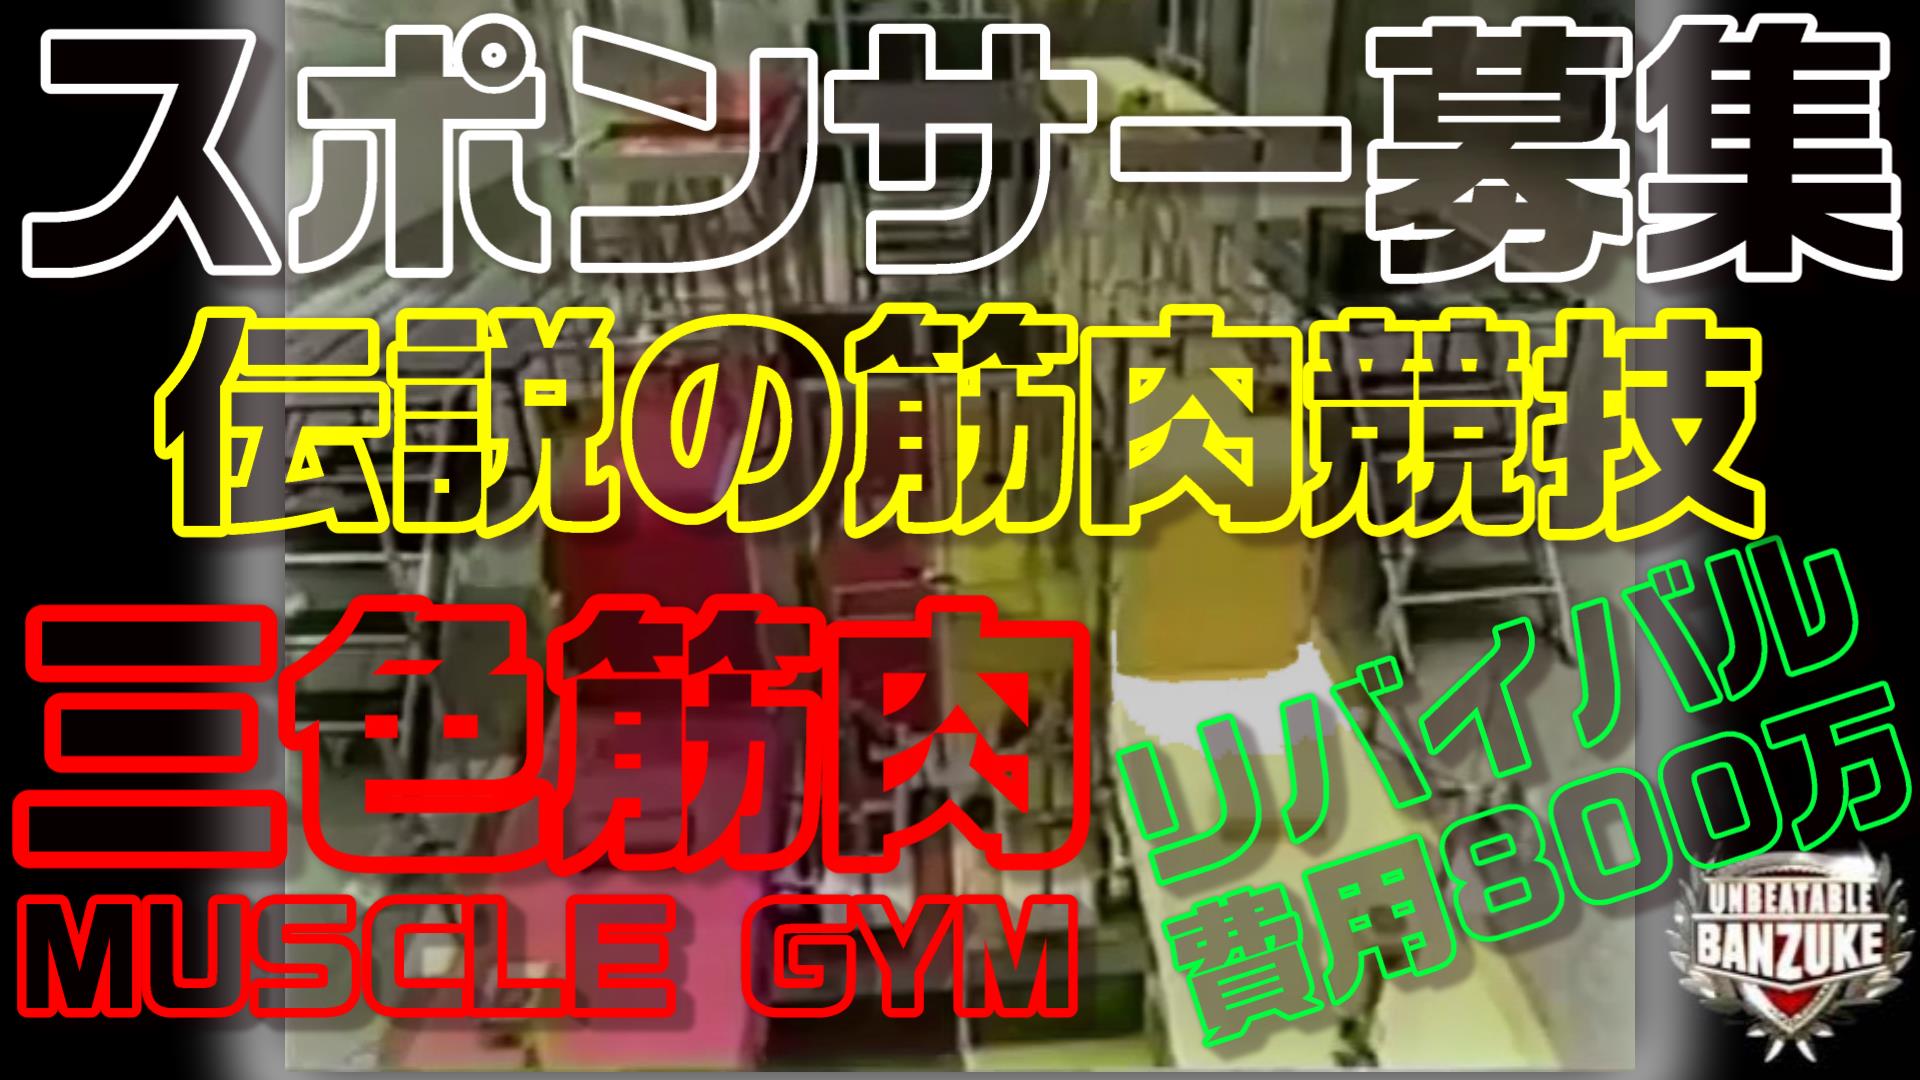 【スポンサー募集】筋肉番付-Unbeatable Banzuke-伝説の競技「THE FINAL PUSH-UP×MUSCLE GYM」リバイバル企画